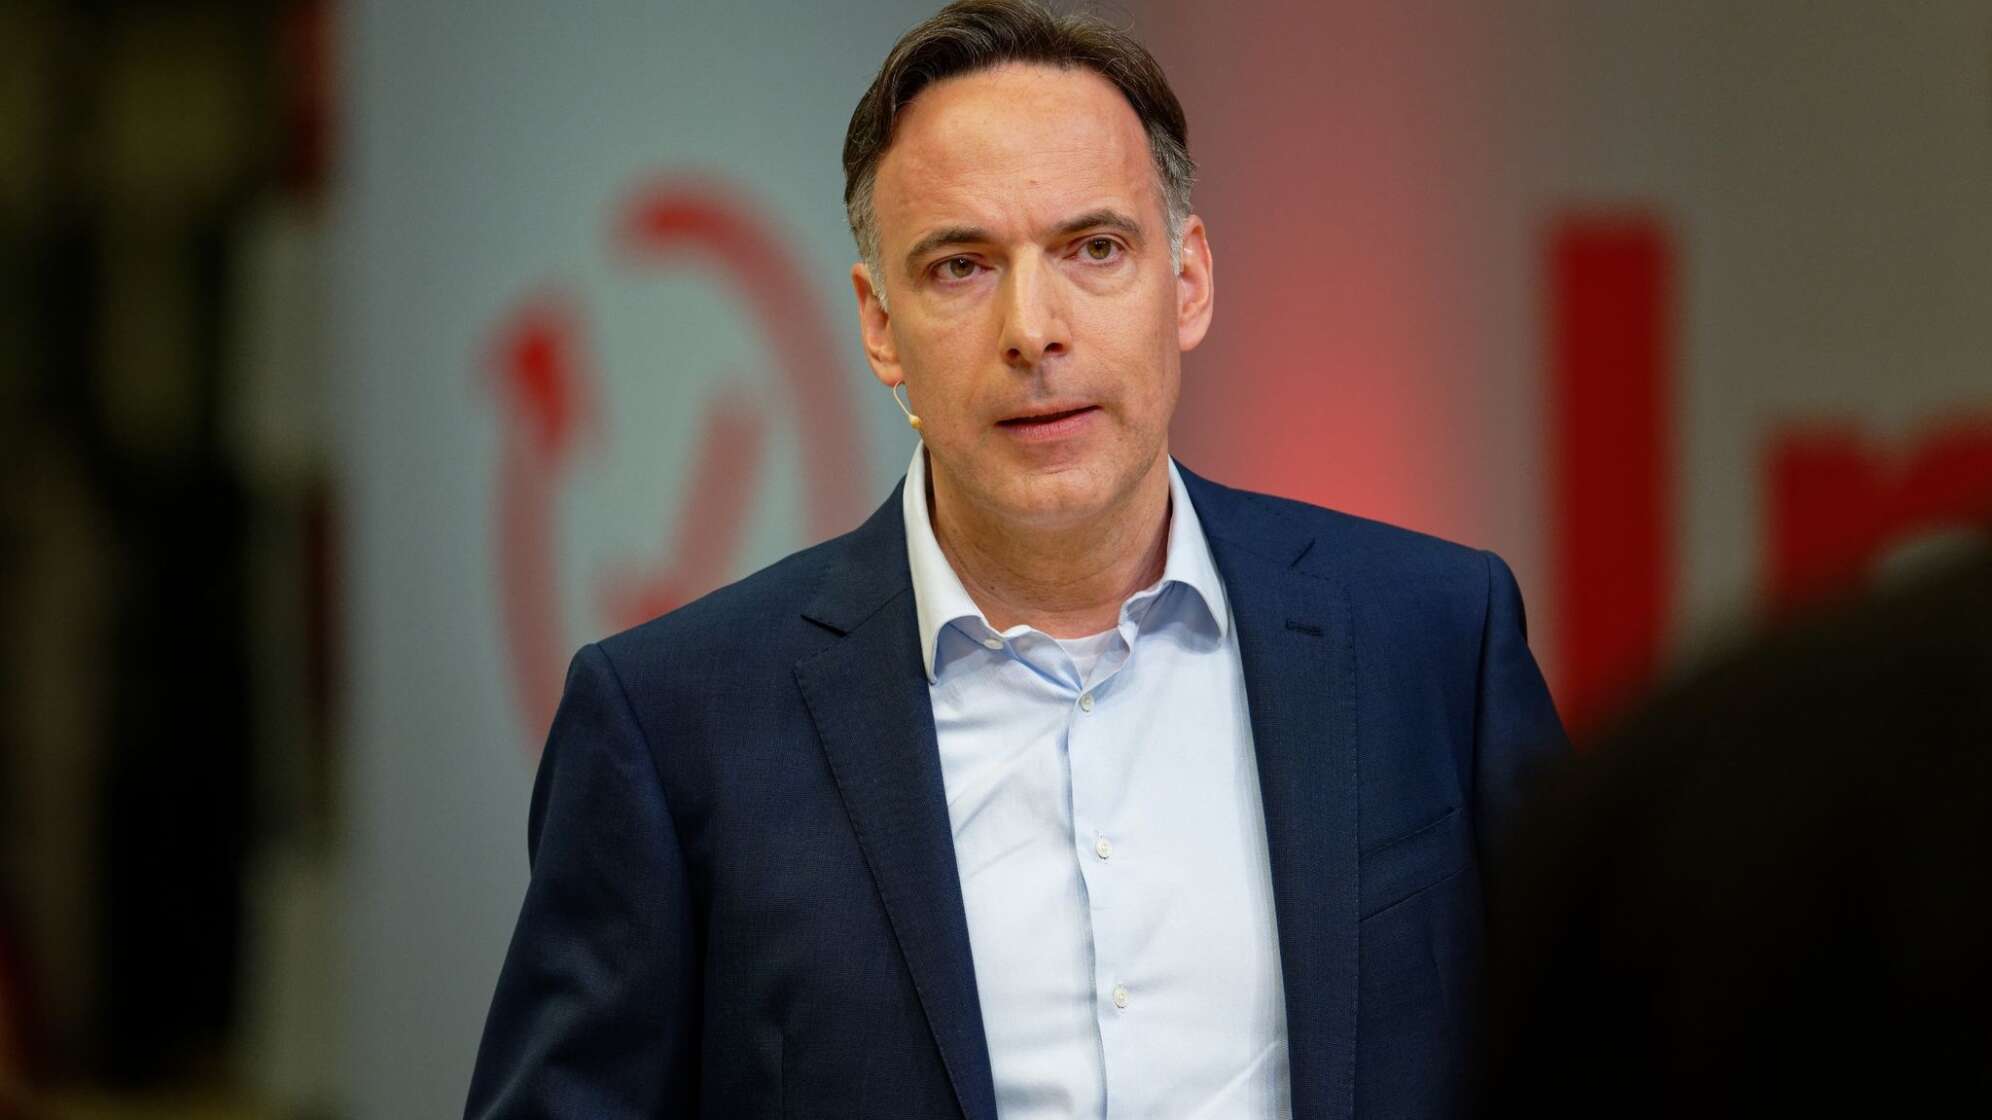 Eon-Finanzchef Marc Spieker